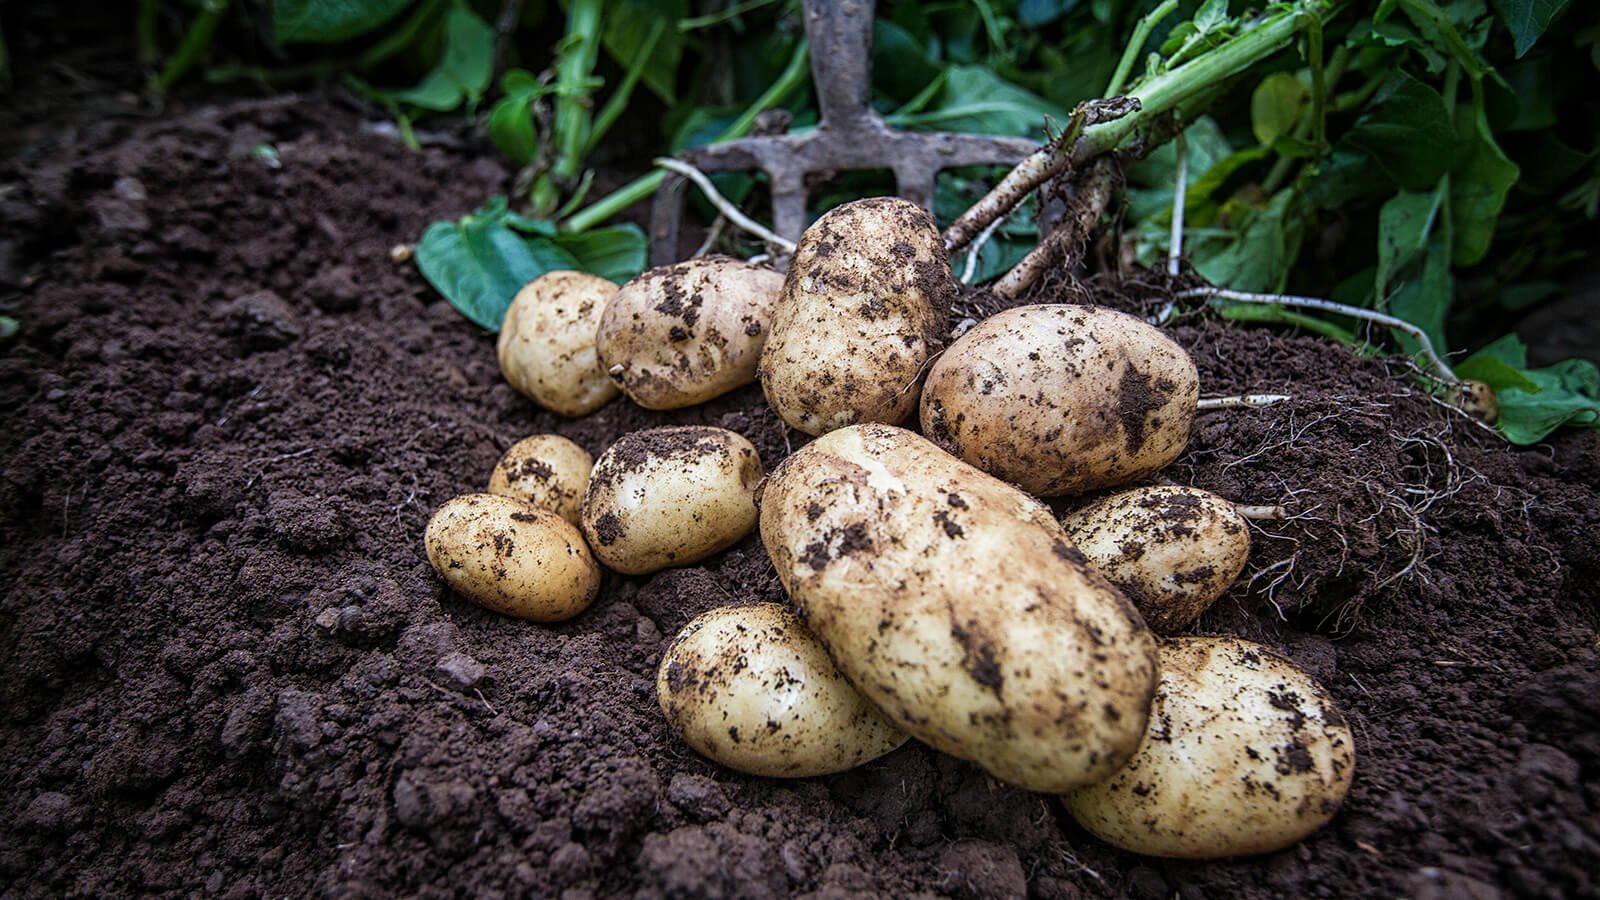 Freshly dug potatoes in Ireland